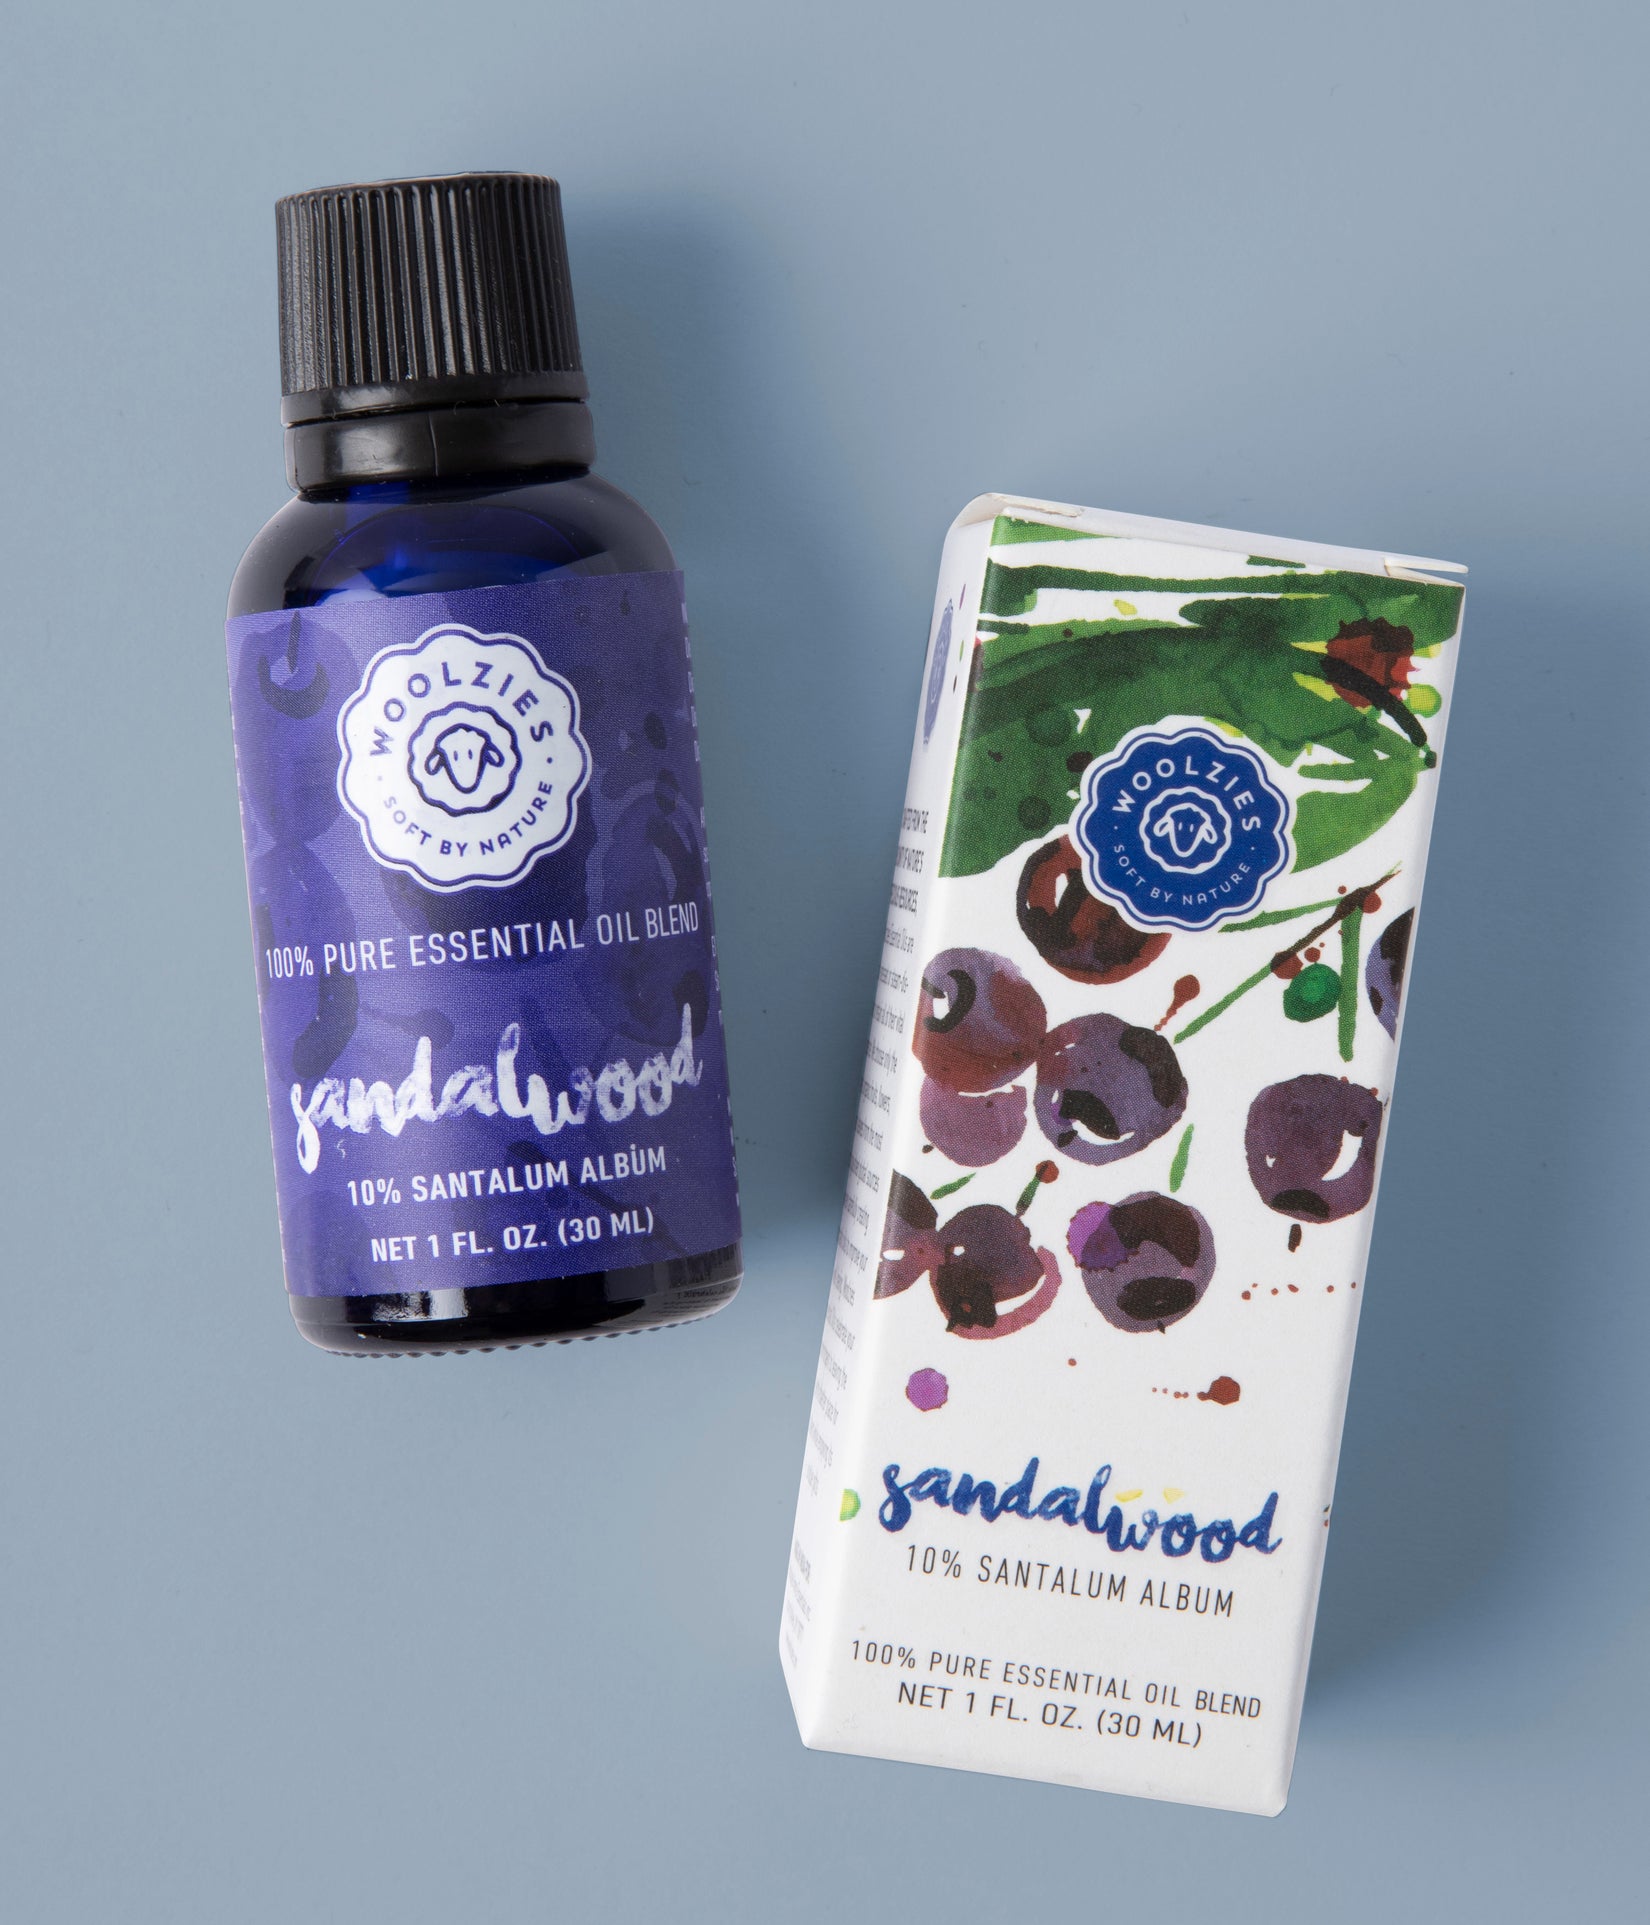 Lavender and Sandalwood Essential Oil Blend Benefits